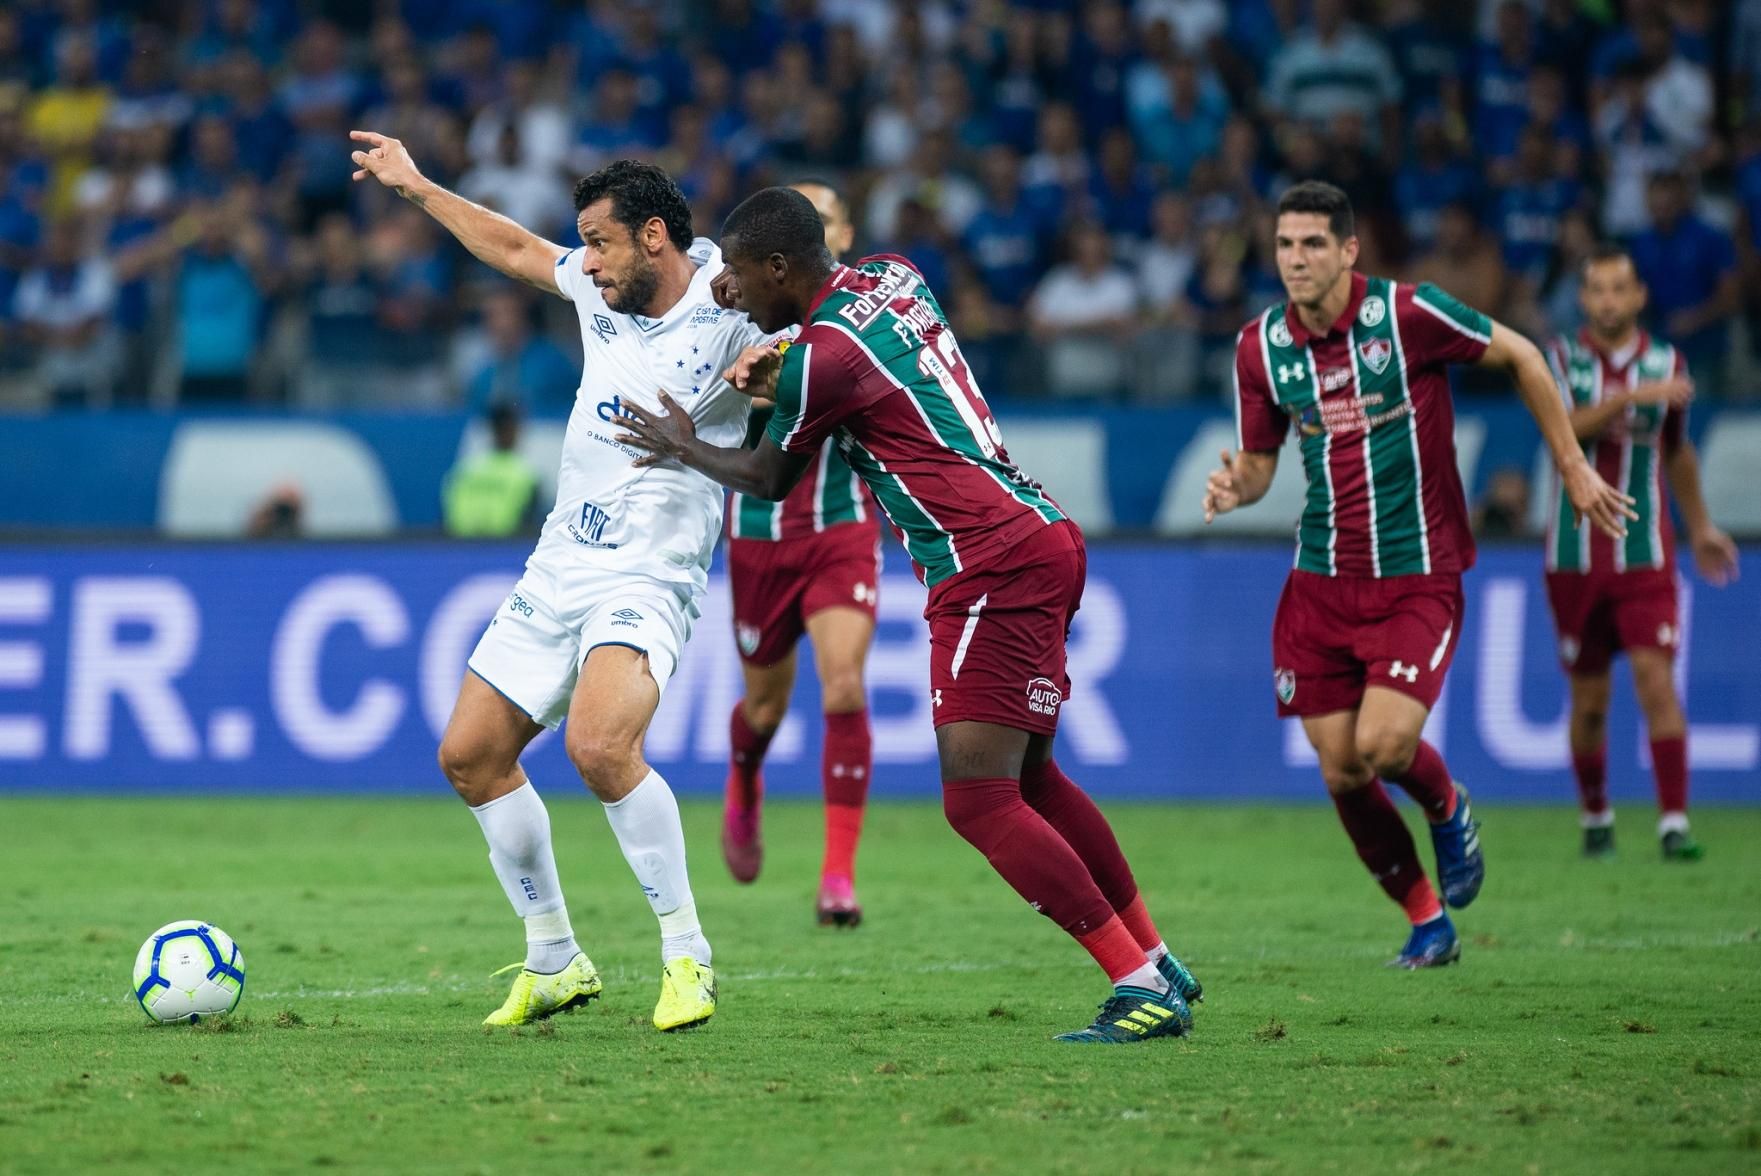 Em jogo de baixo nível técnico, Cruzeiro vence e afunda o Vasco